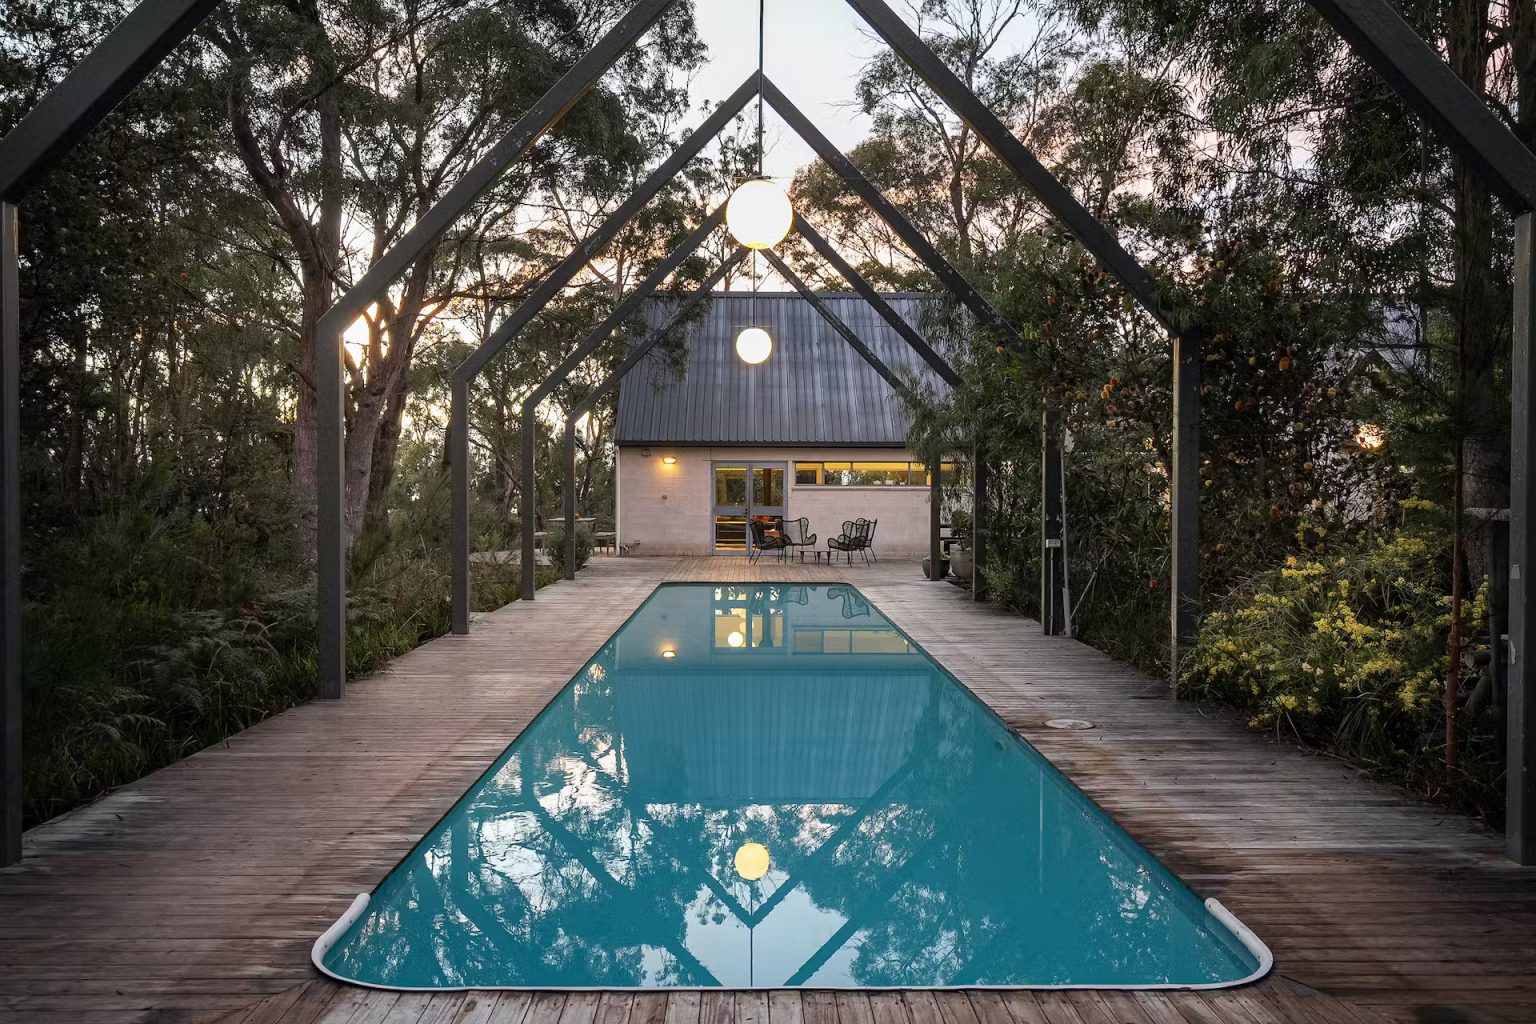 piscine avec pool house